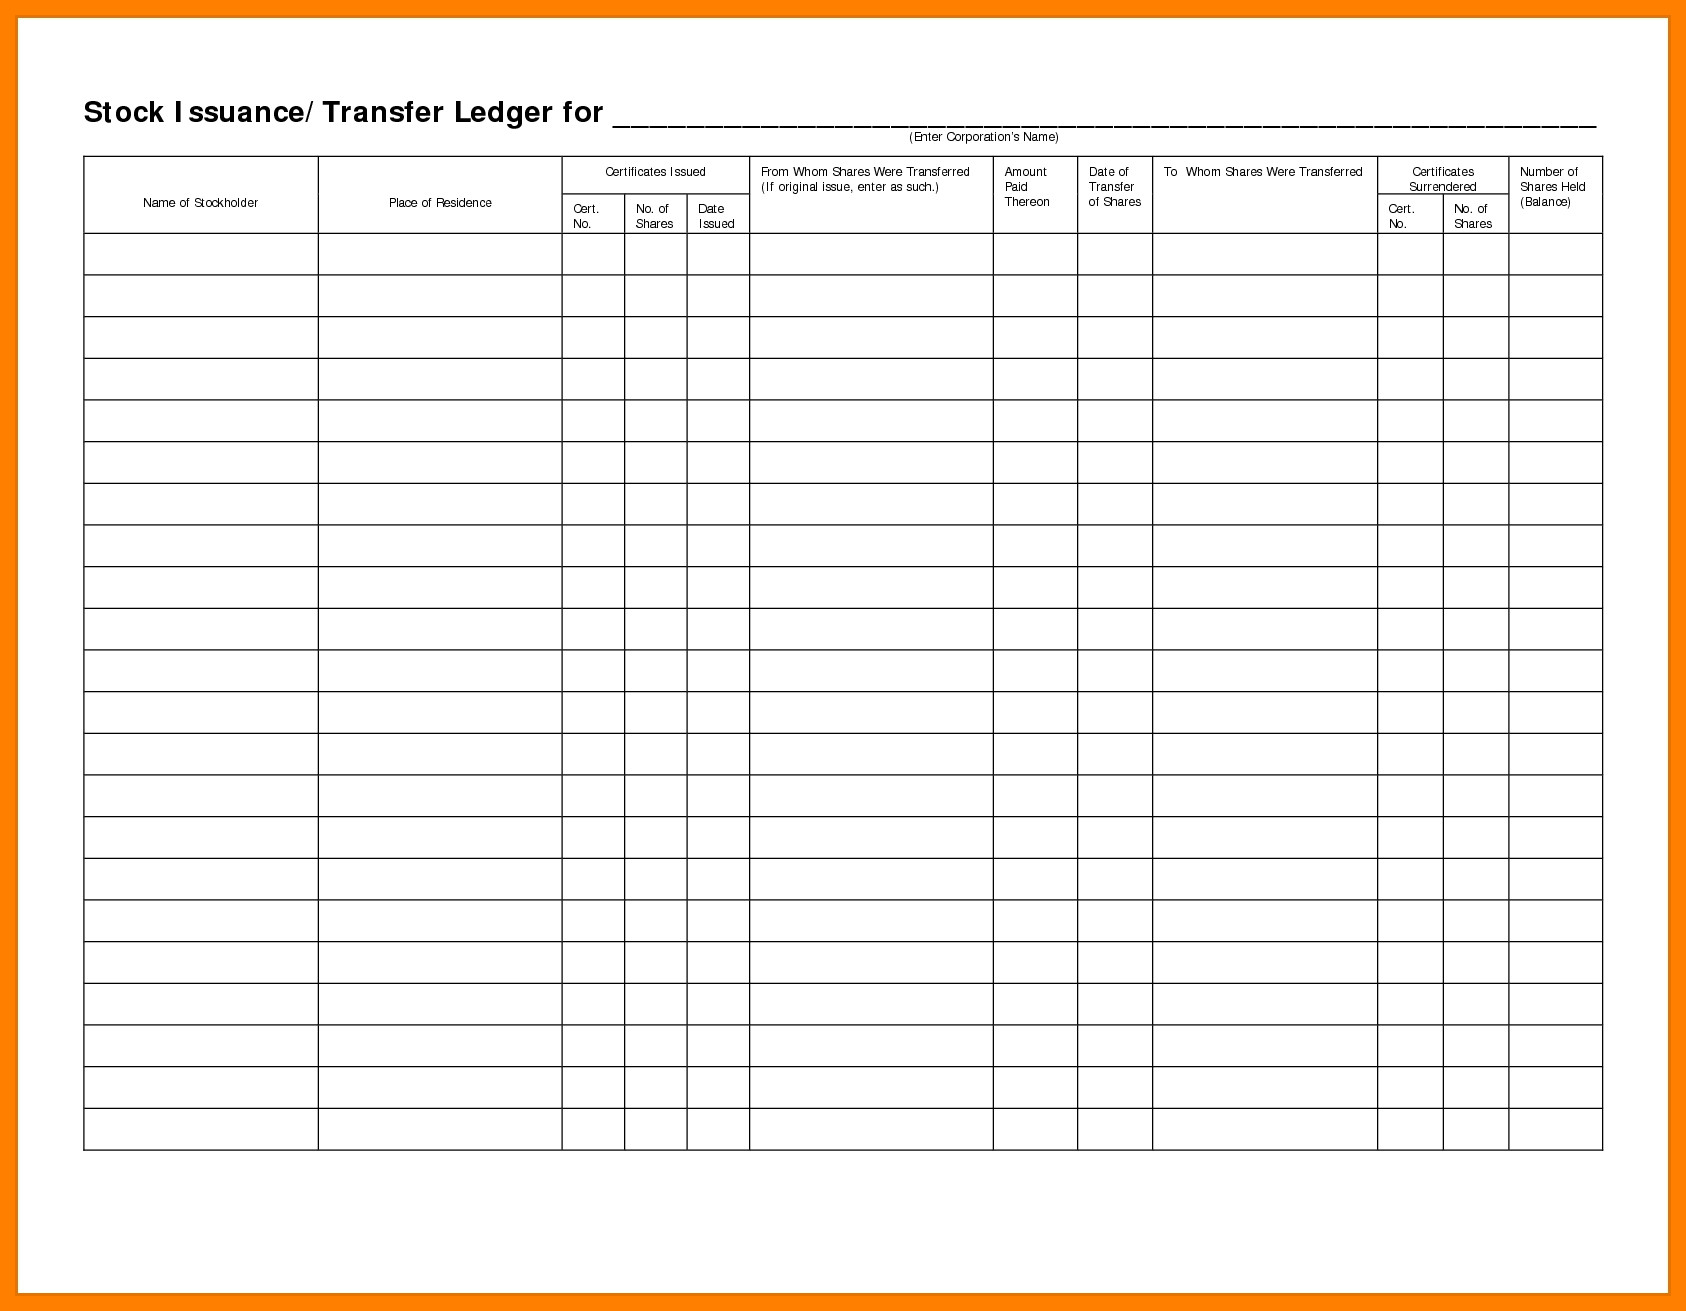 Stock Transfer Ledger Template 5 Stock Transfer Ledger Template Excel